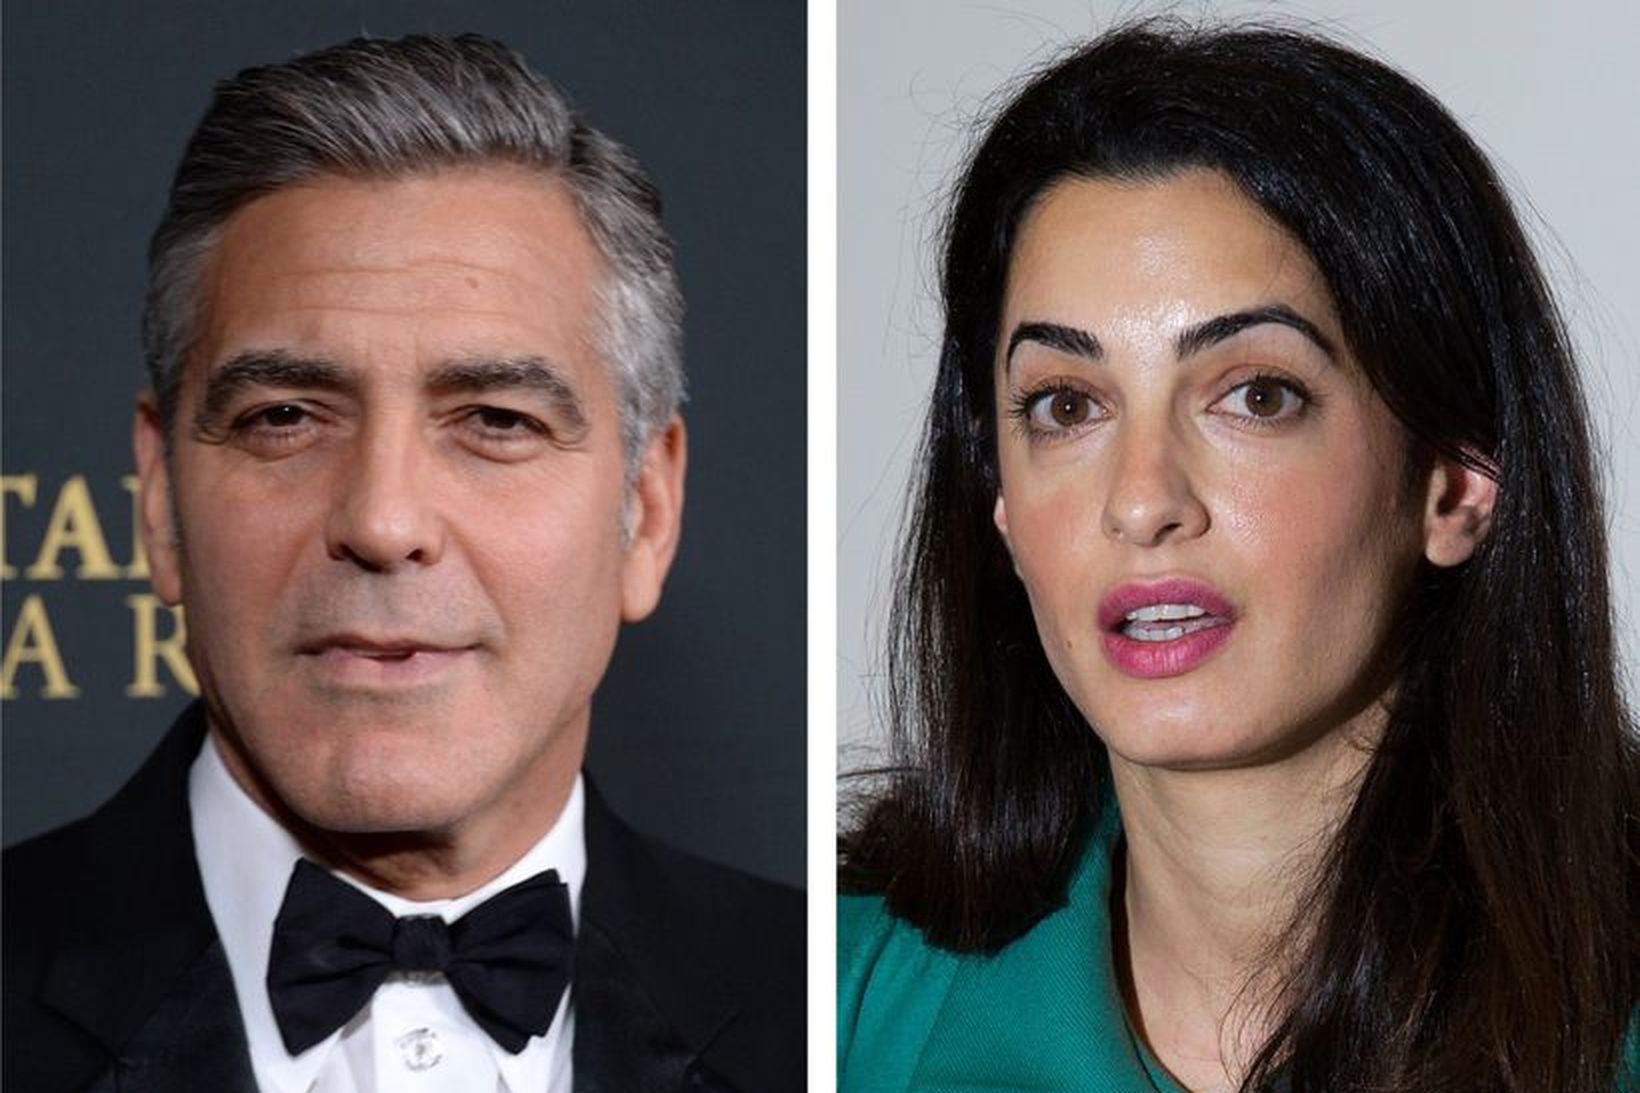 Flottasta par Hollywood, leikarinn George Clooney og lögmaðurinn Amal Alamuddin.